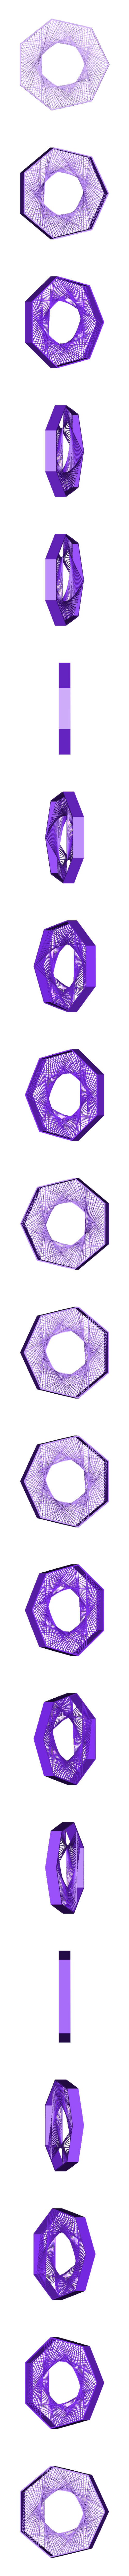 201103_stiffened-heptagon.stl Descargar archivo STL gratis Polígonos reforzados • Diseño para la impresora 3D, alecs_form